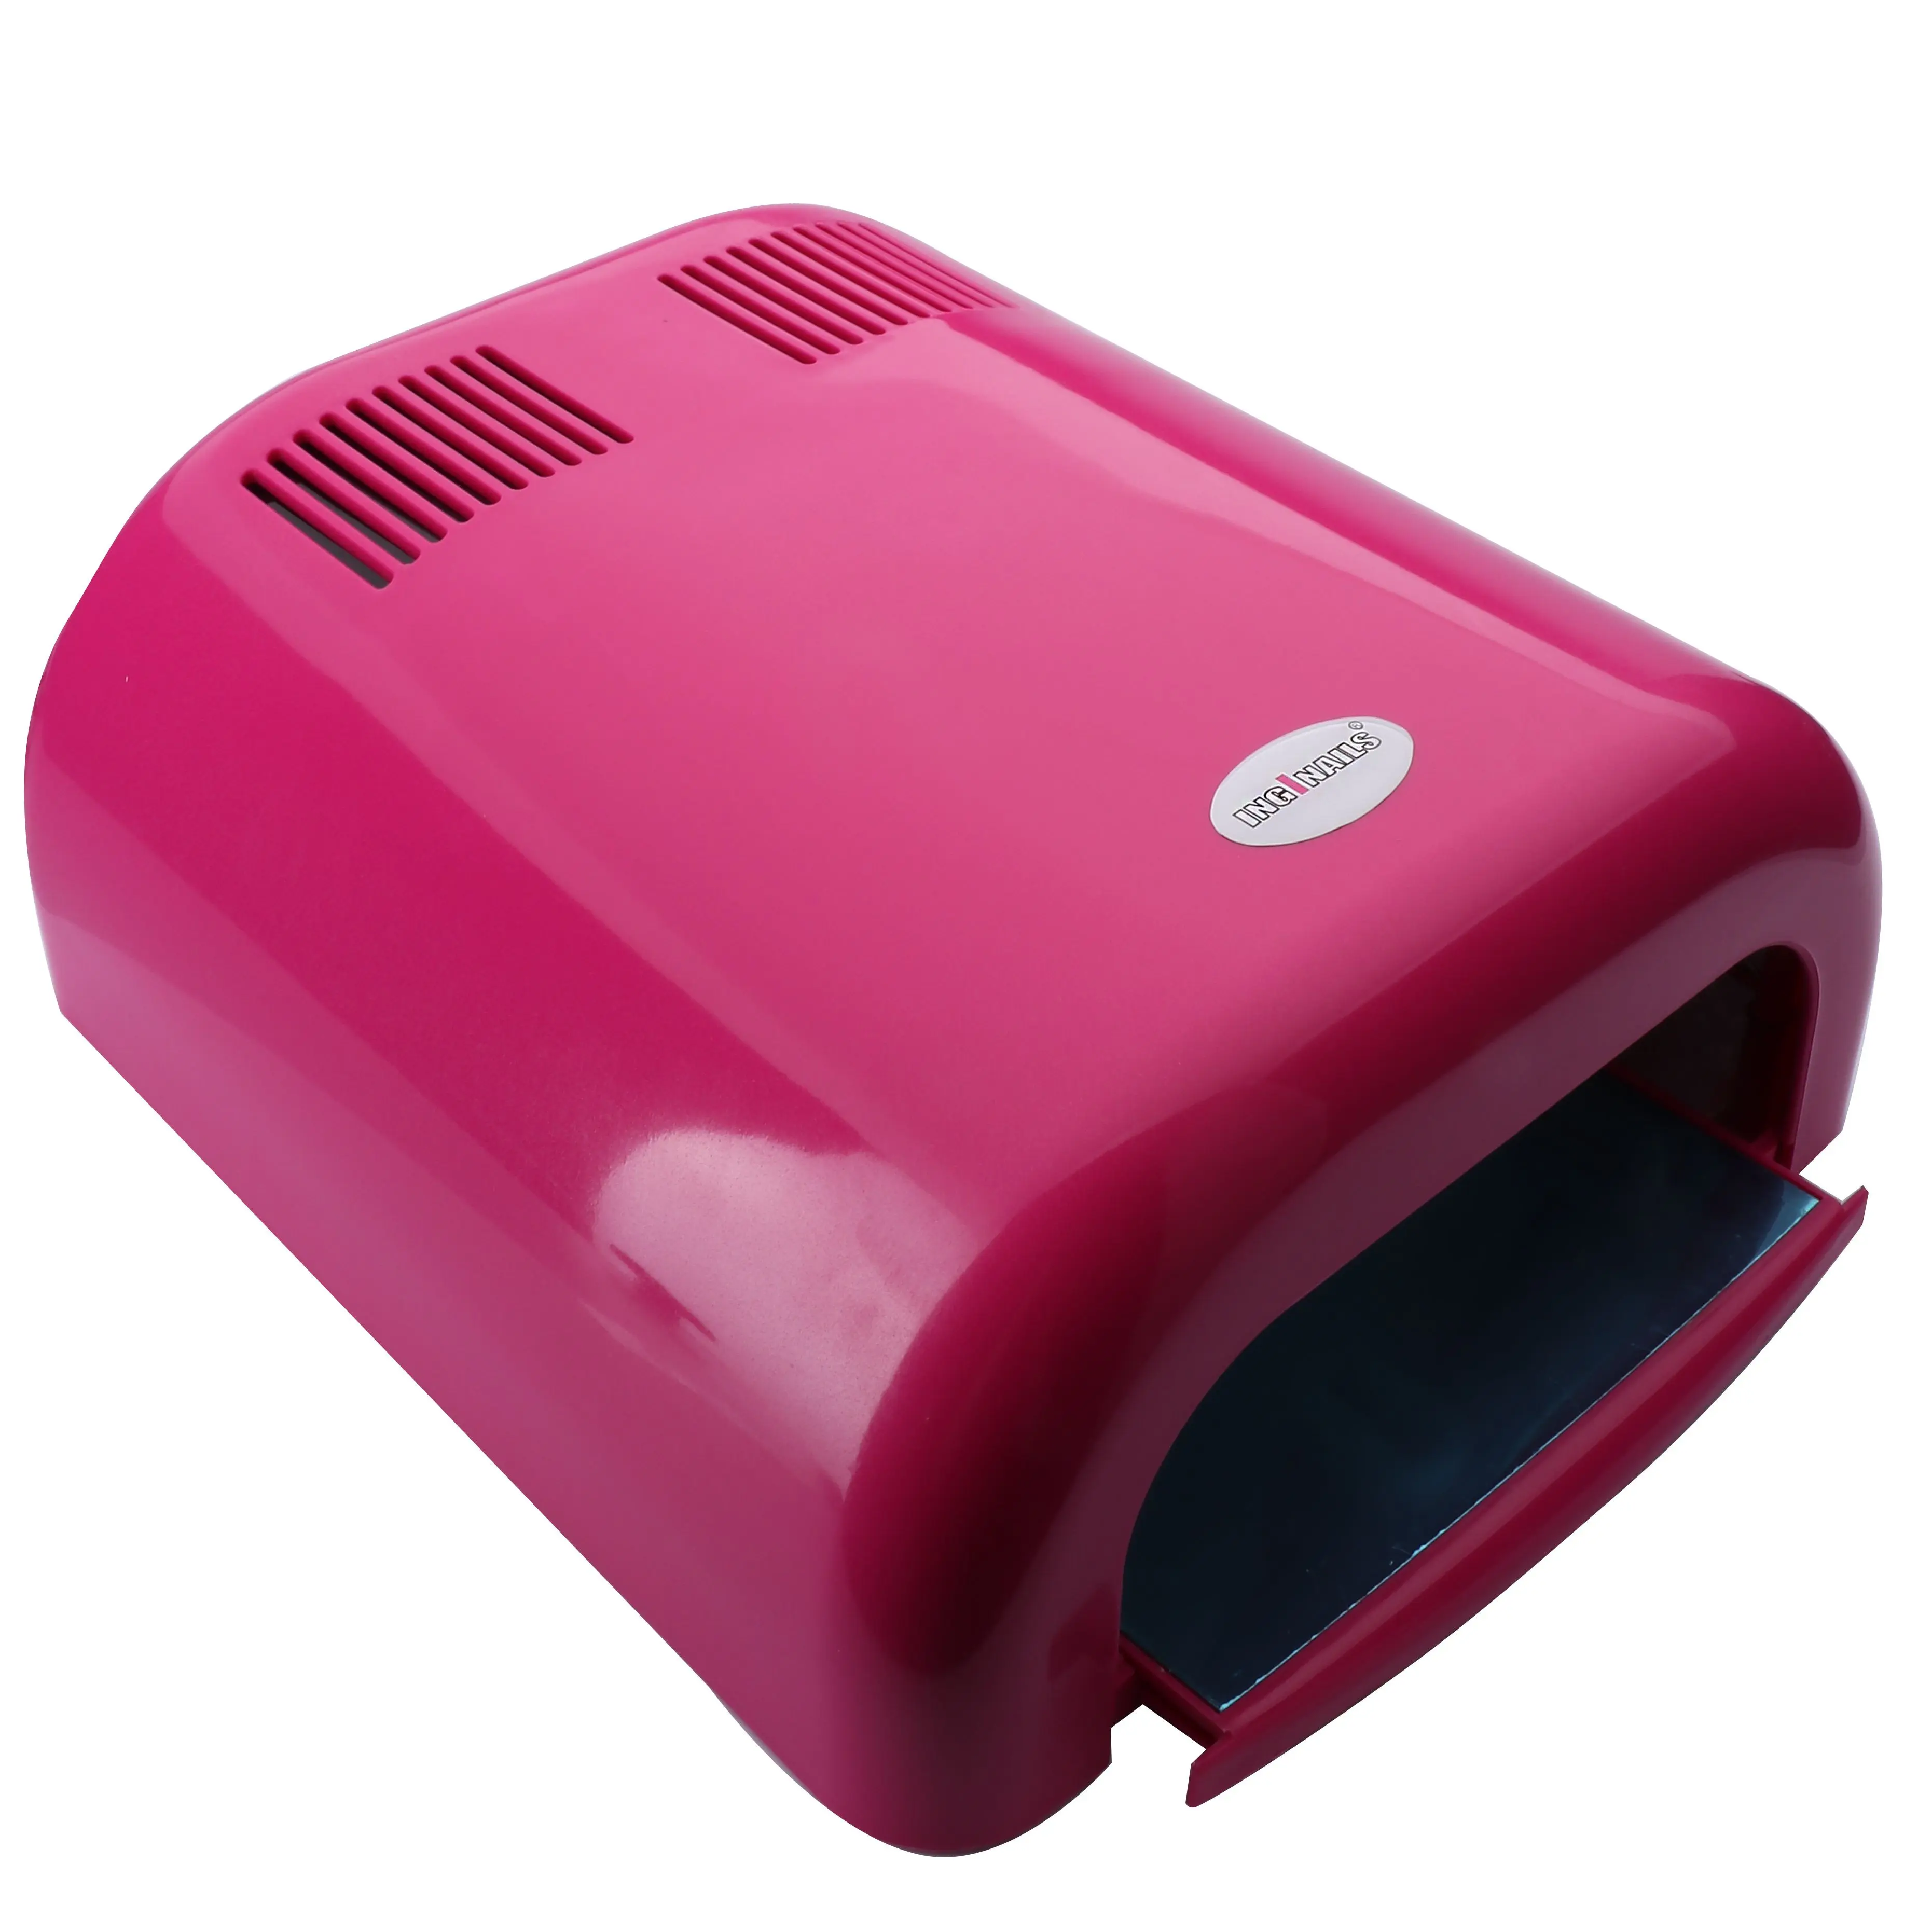 Ružová UV lampa na nechty Inginails - 36W, 120s časovač